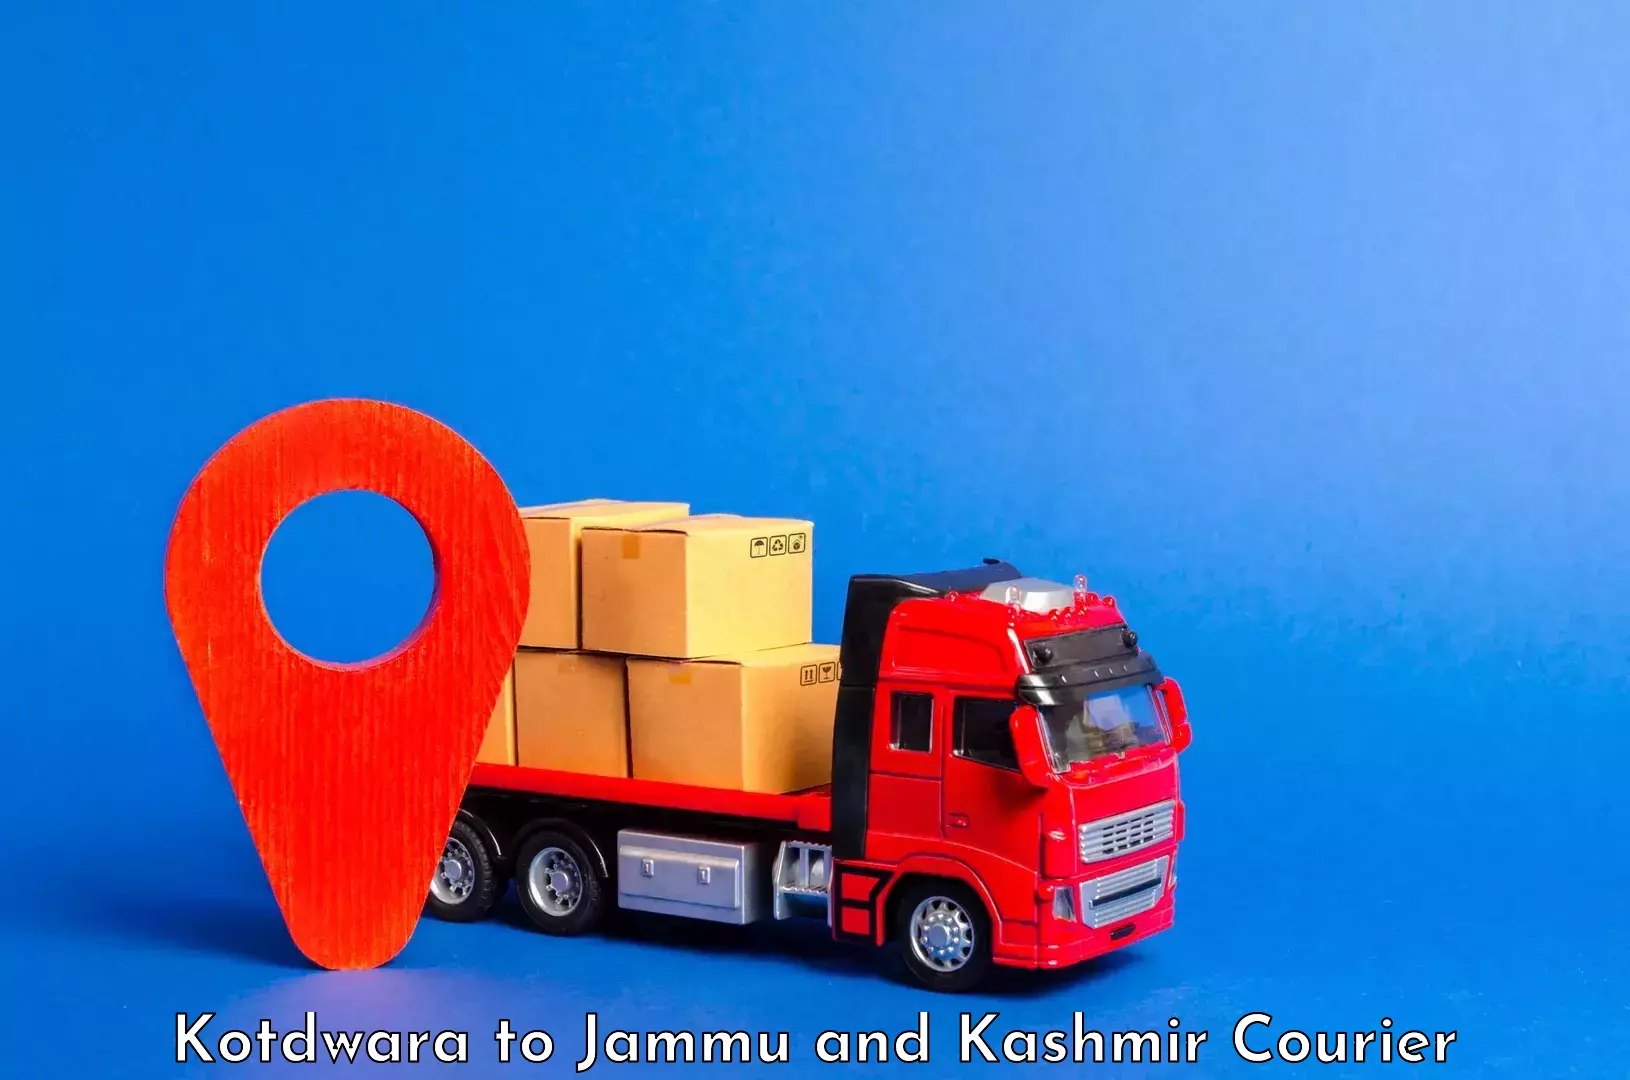 Baggage transport professionals Kotdwara to Jammu and Kashmir